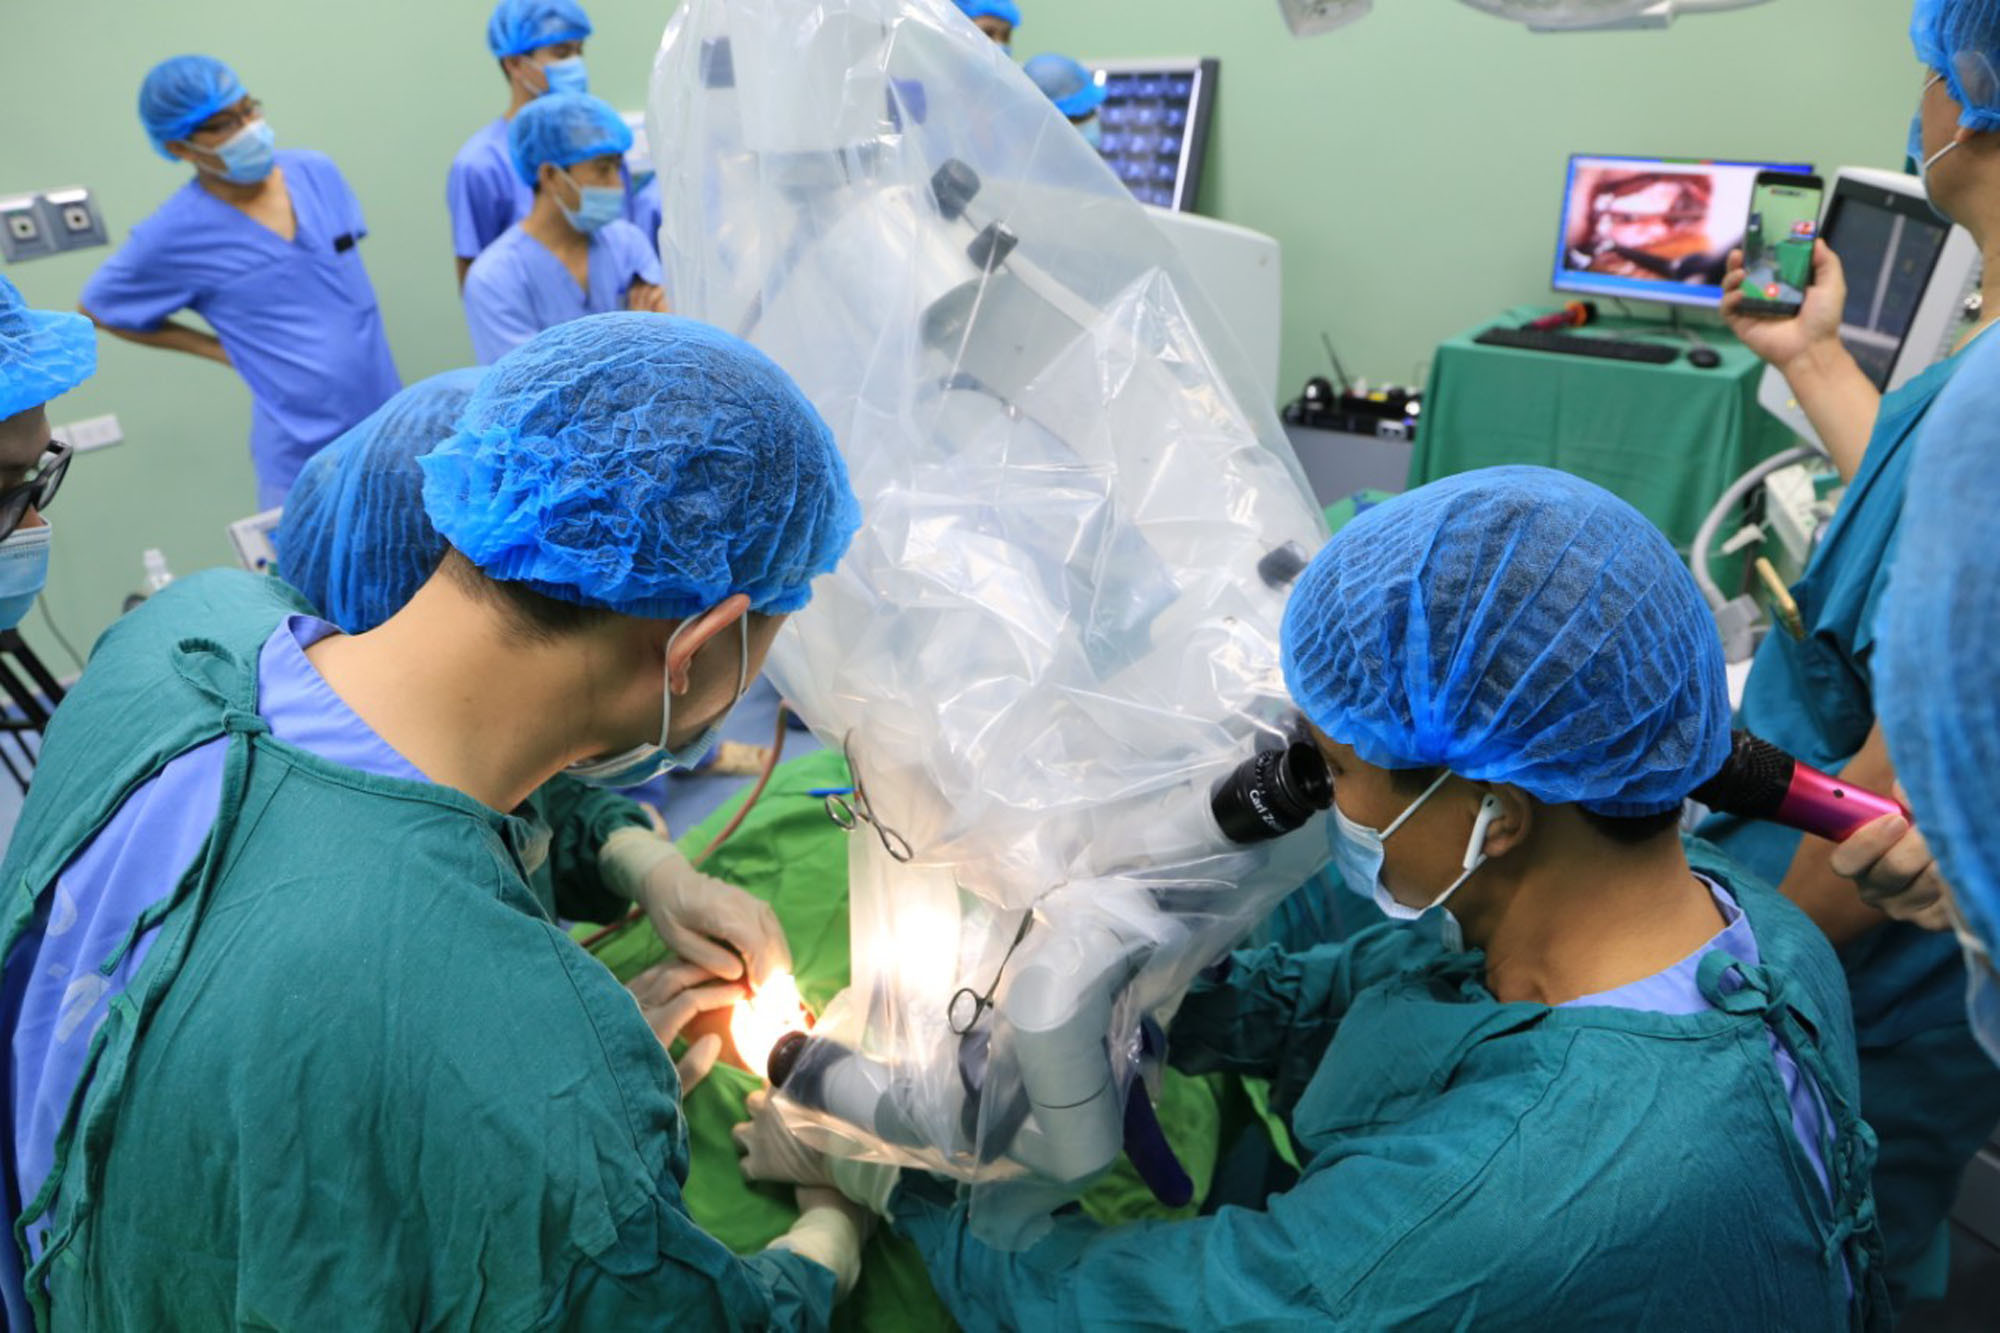 Phẫu thuật cấy ốc tai điện tử điều trị khiếm thính bẩm sinh cho trẻ em tại Bệnh viện Sản Nhi Nghệ An. Ảnh: Thành Chung